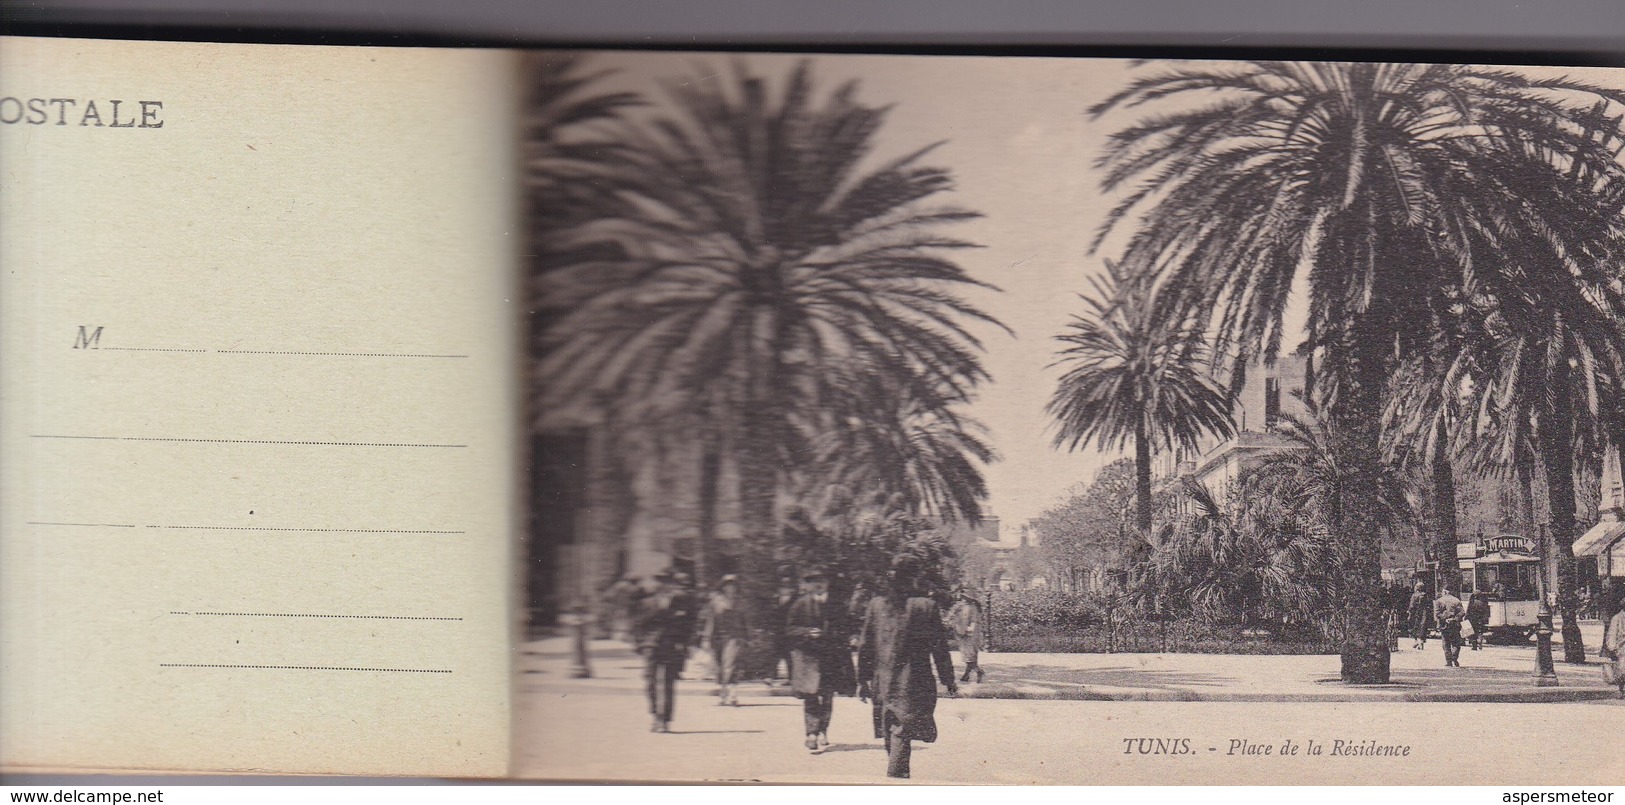 TUNIS, 24 VUES DETACHABLES. AM. PHOTOSET GRUSS AUS LEMBRANÇA SOUVENIR 1900s - BLEUP - Tunesien